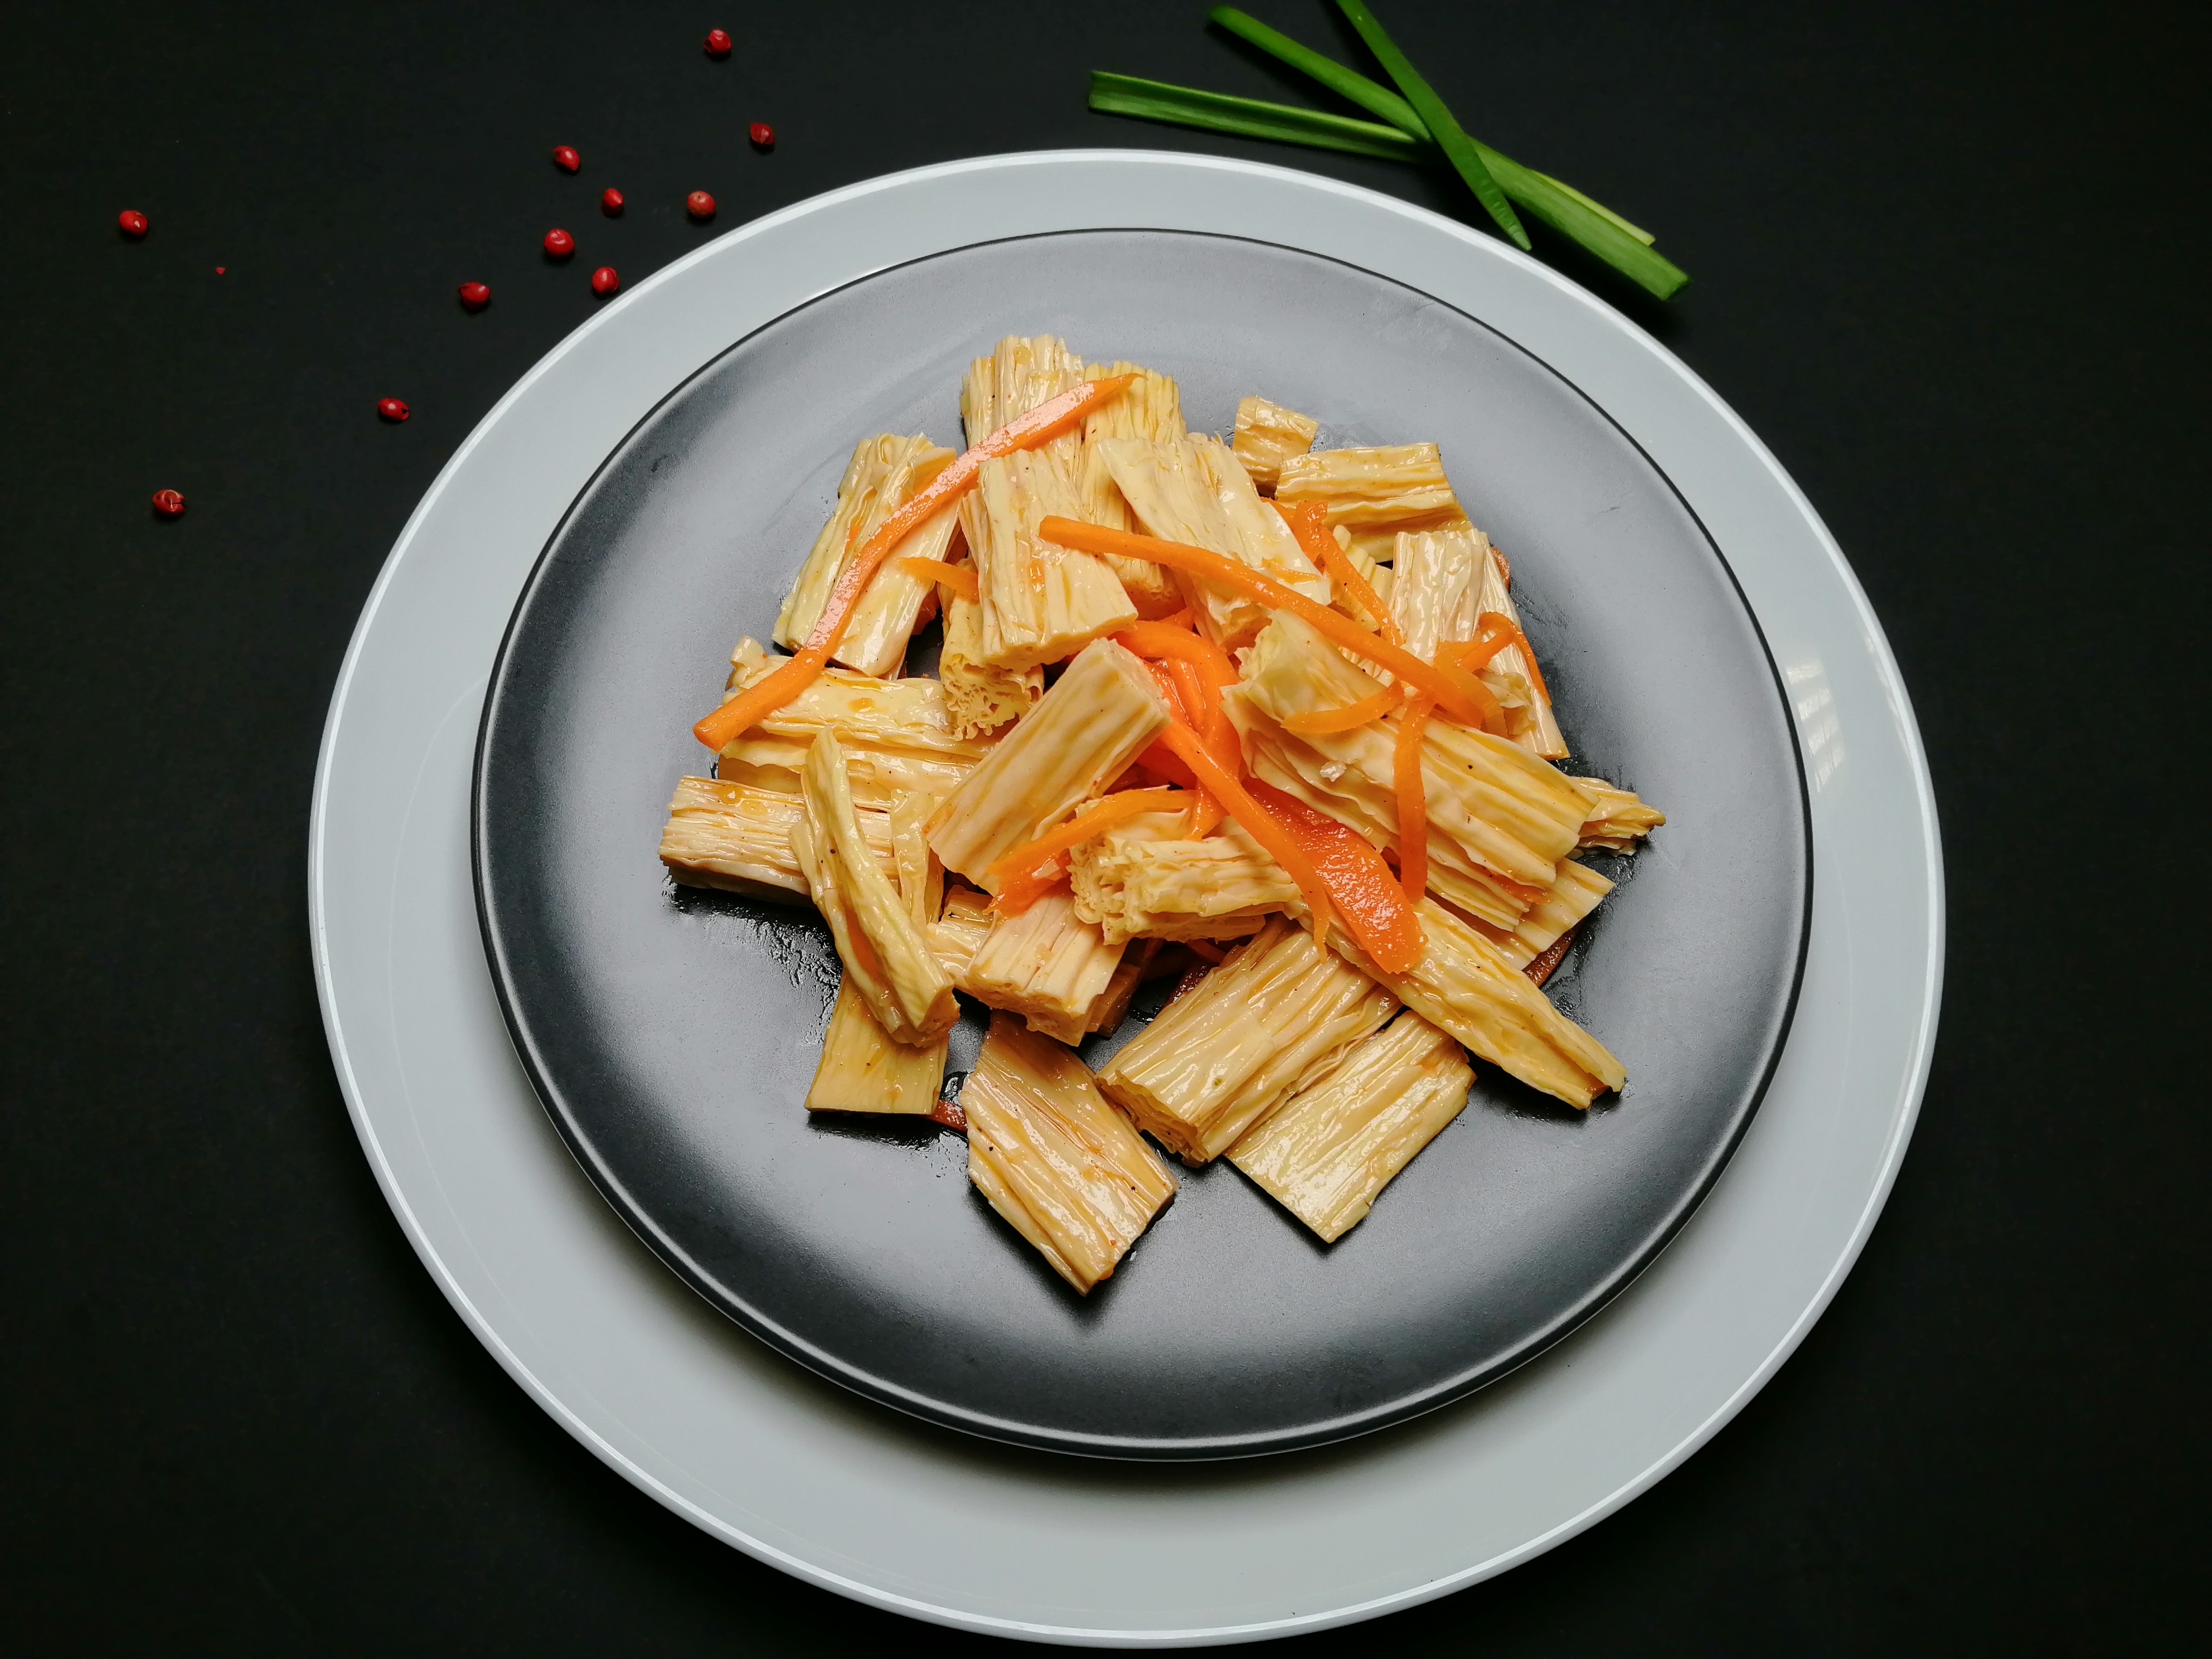 Рецепт морковь по корейски с заправкой сен сой масло 16 гр. калорийность, химический состав и пищевая ценность.